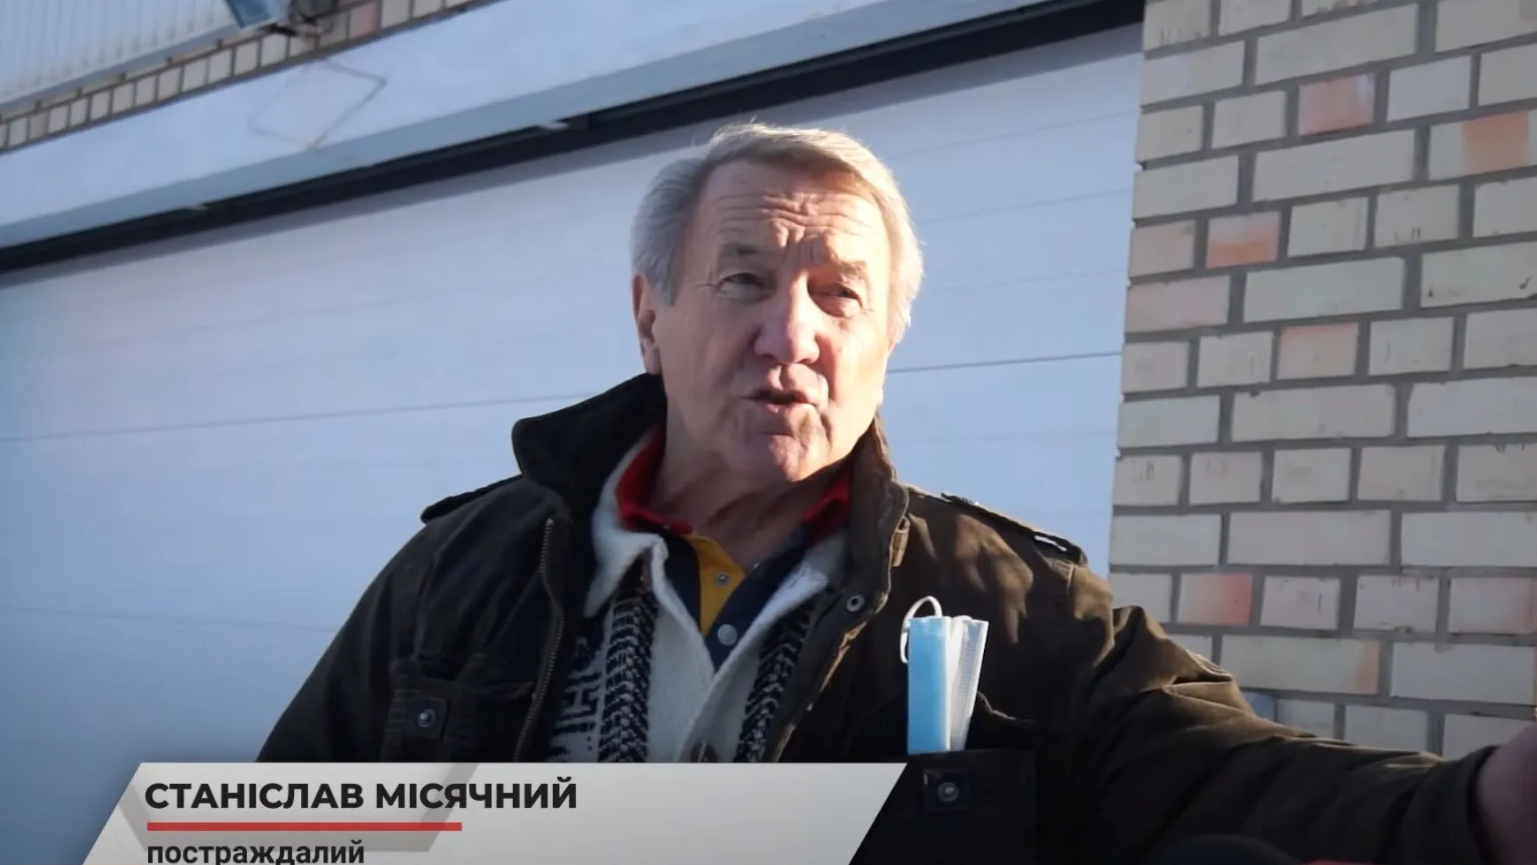 В Пуще-Водице мужчину  "с особыми связями" обвиняют в угрозах супругам-пенсионерам: якобы хочет отобрать их землю - СМИ